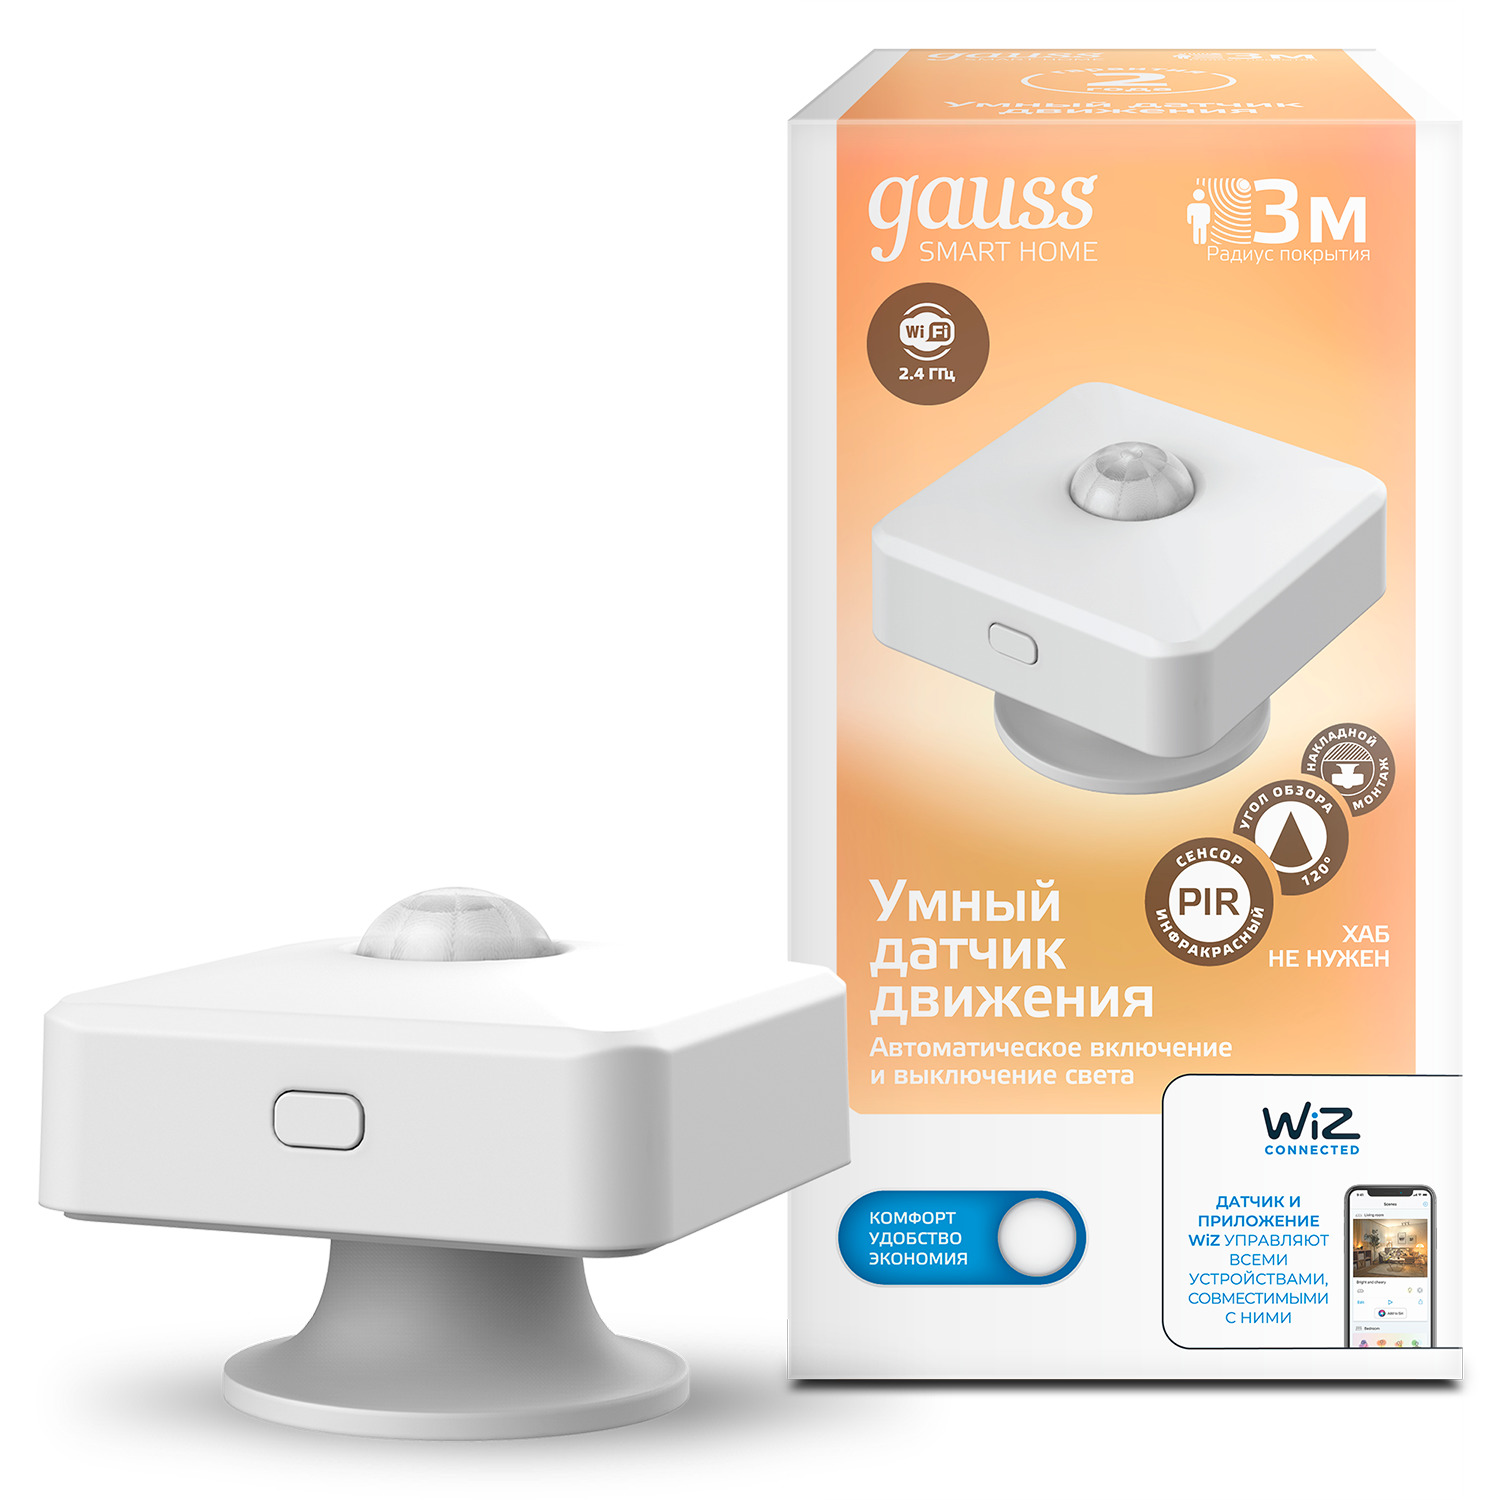 Умный Wi-Fi датчик движения Gauss Smart Home 3м 120˚ умный wi fi датчик движения gauss smart home 4010322 3 м 120°